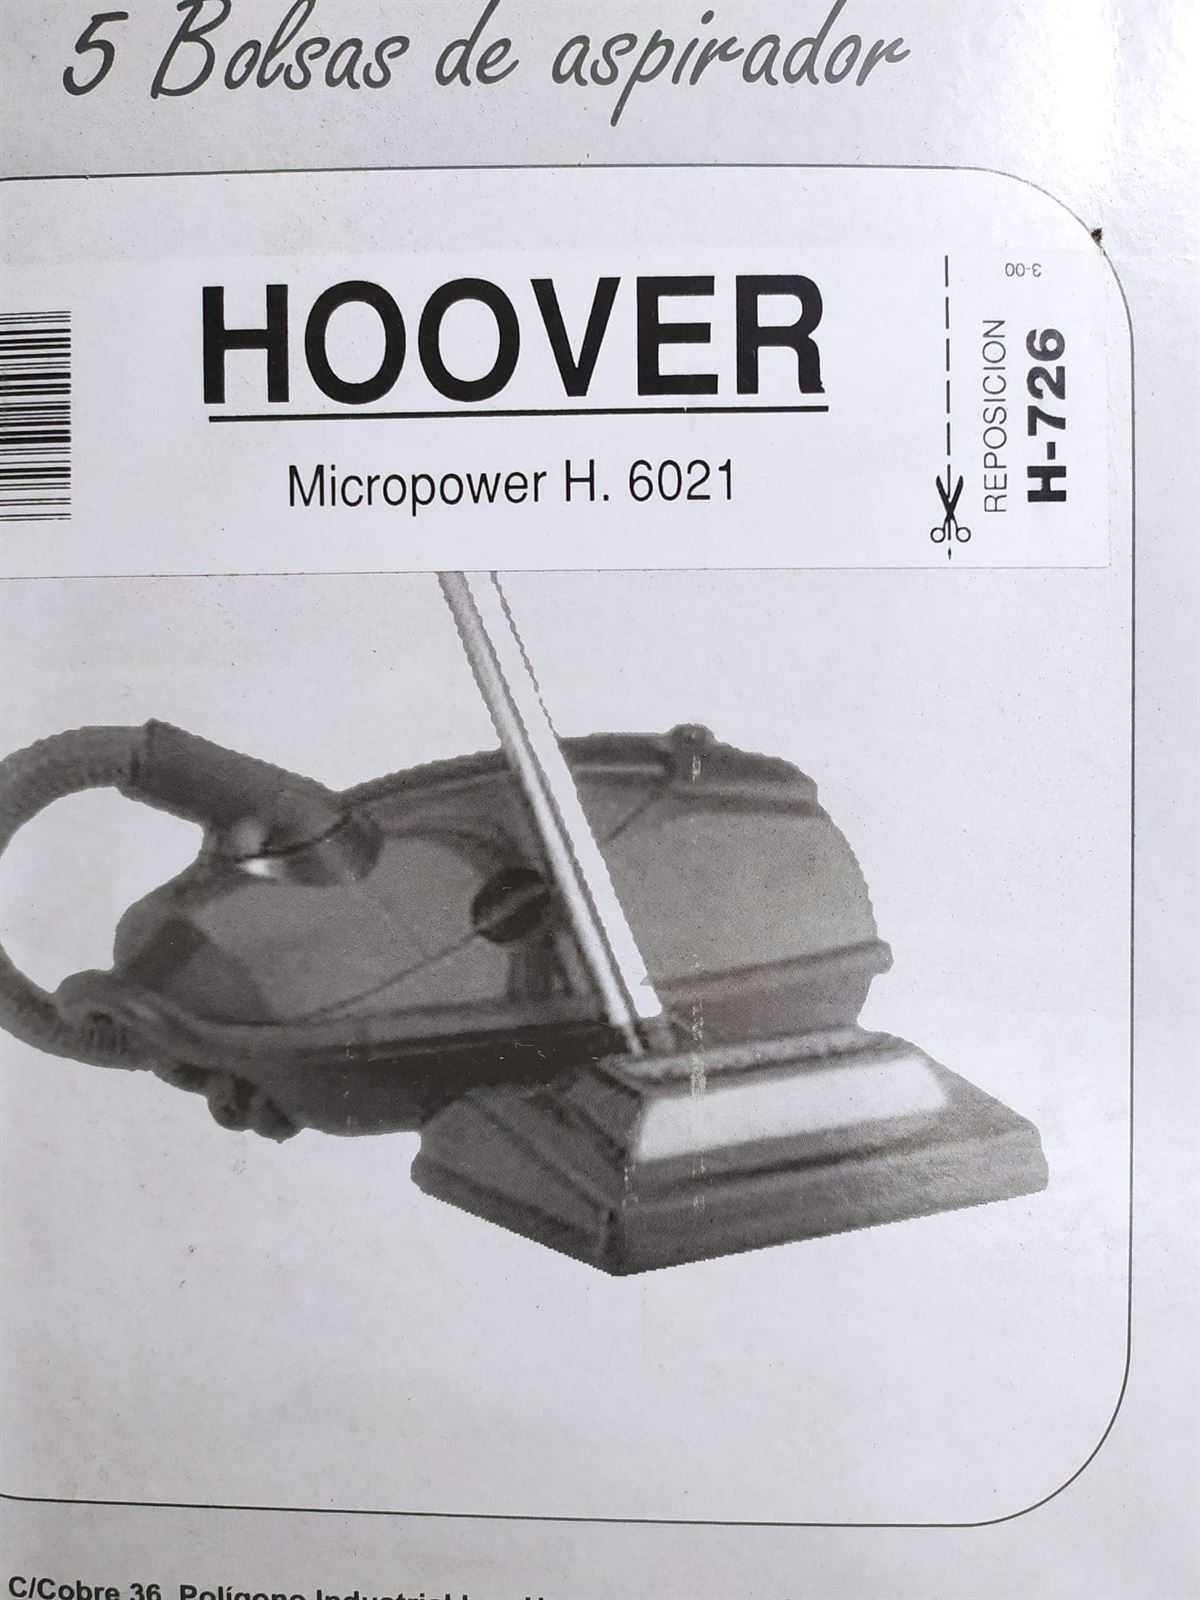 BOLSA ASPIRADOR HOOVER, MICROPOWER H6021, CAJA 5 BOLSAS PAPEL, F-726 - Imagen 1